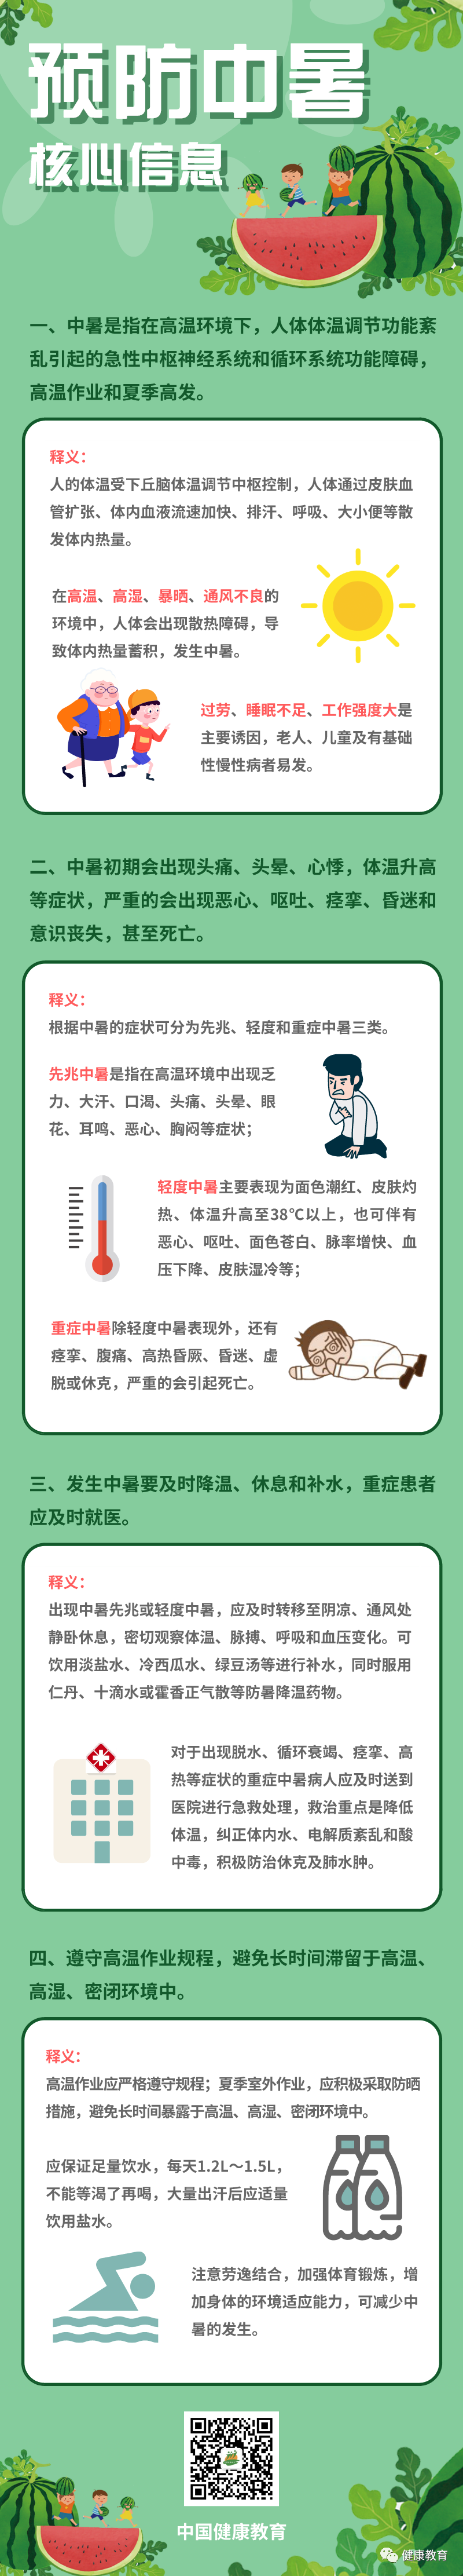 【健康科普】預防中暑核心資訊 健康 第2張